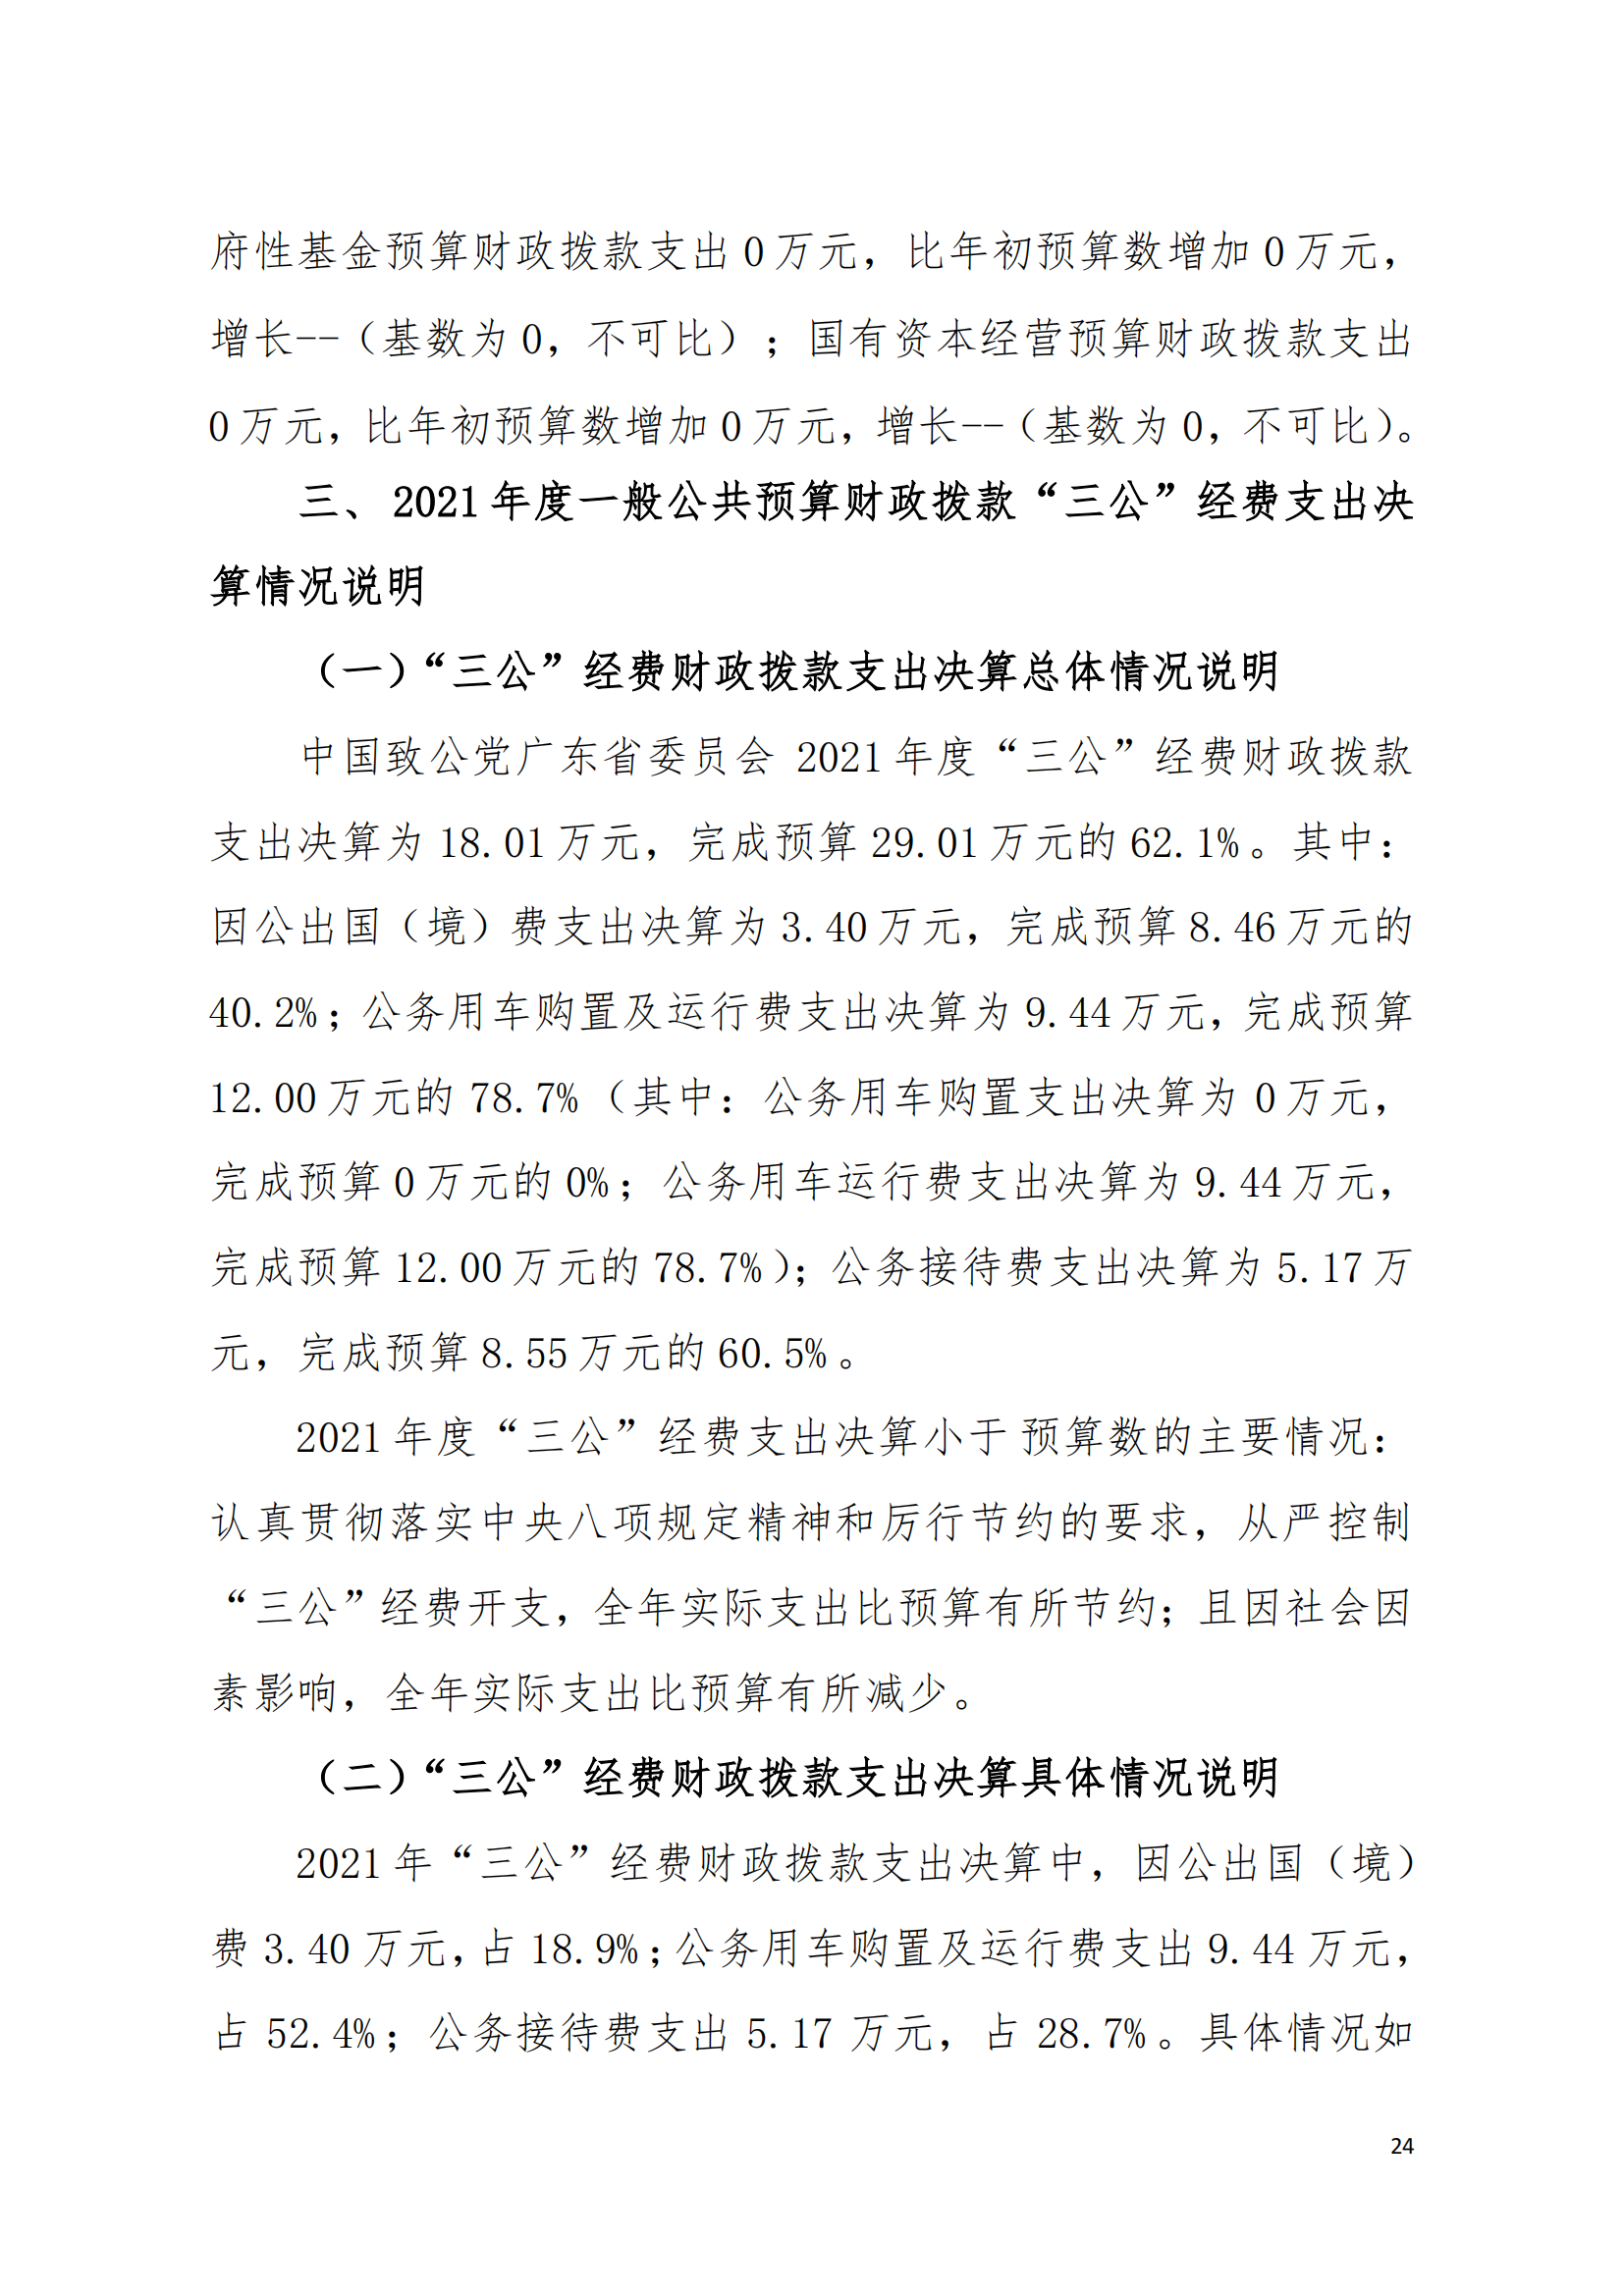 2021年中国致公党广东省委员会部门决算（0706更新）_23.png